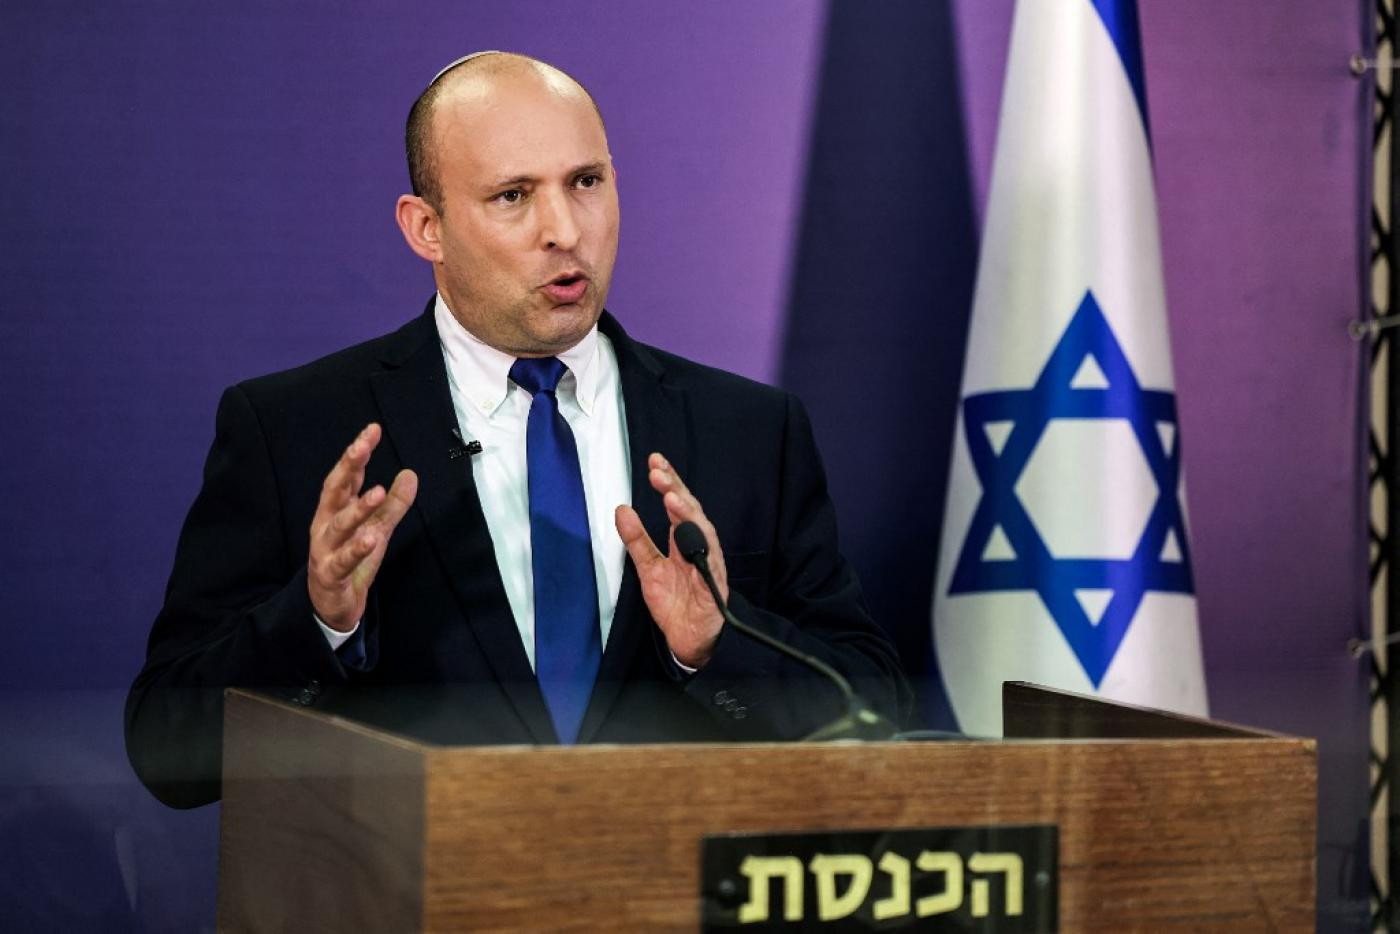 Naftali Bennett Sworn In As Israel's New Prime Minister, Ending Netanyahu's 12-Year Rule